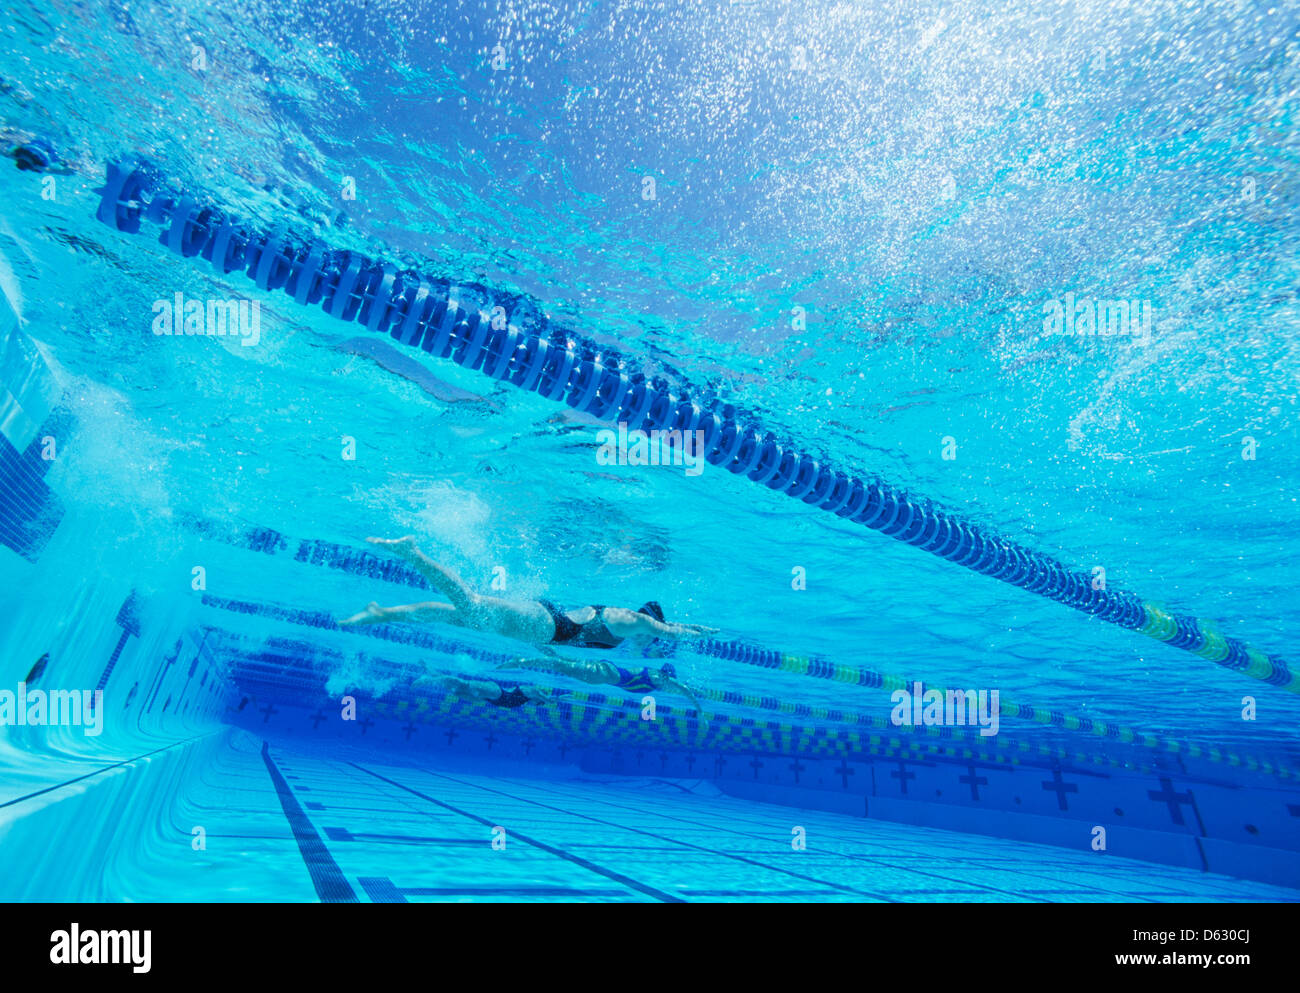 Los nadadores compitiendo juntos en la piscina Foto de stock